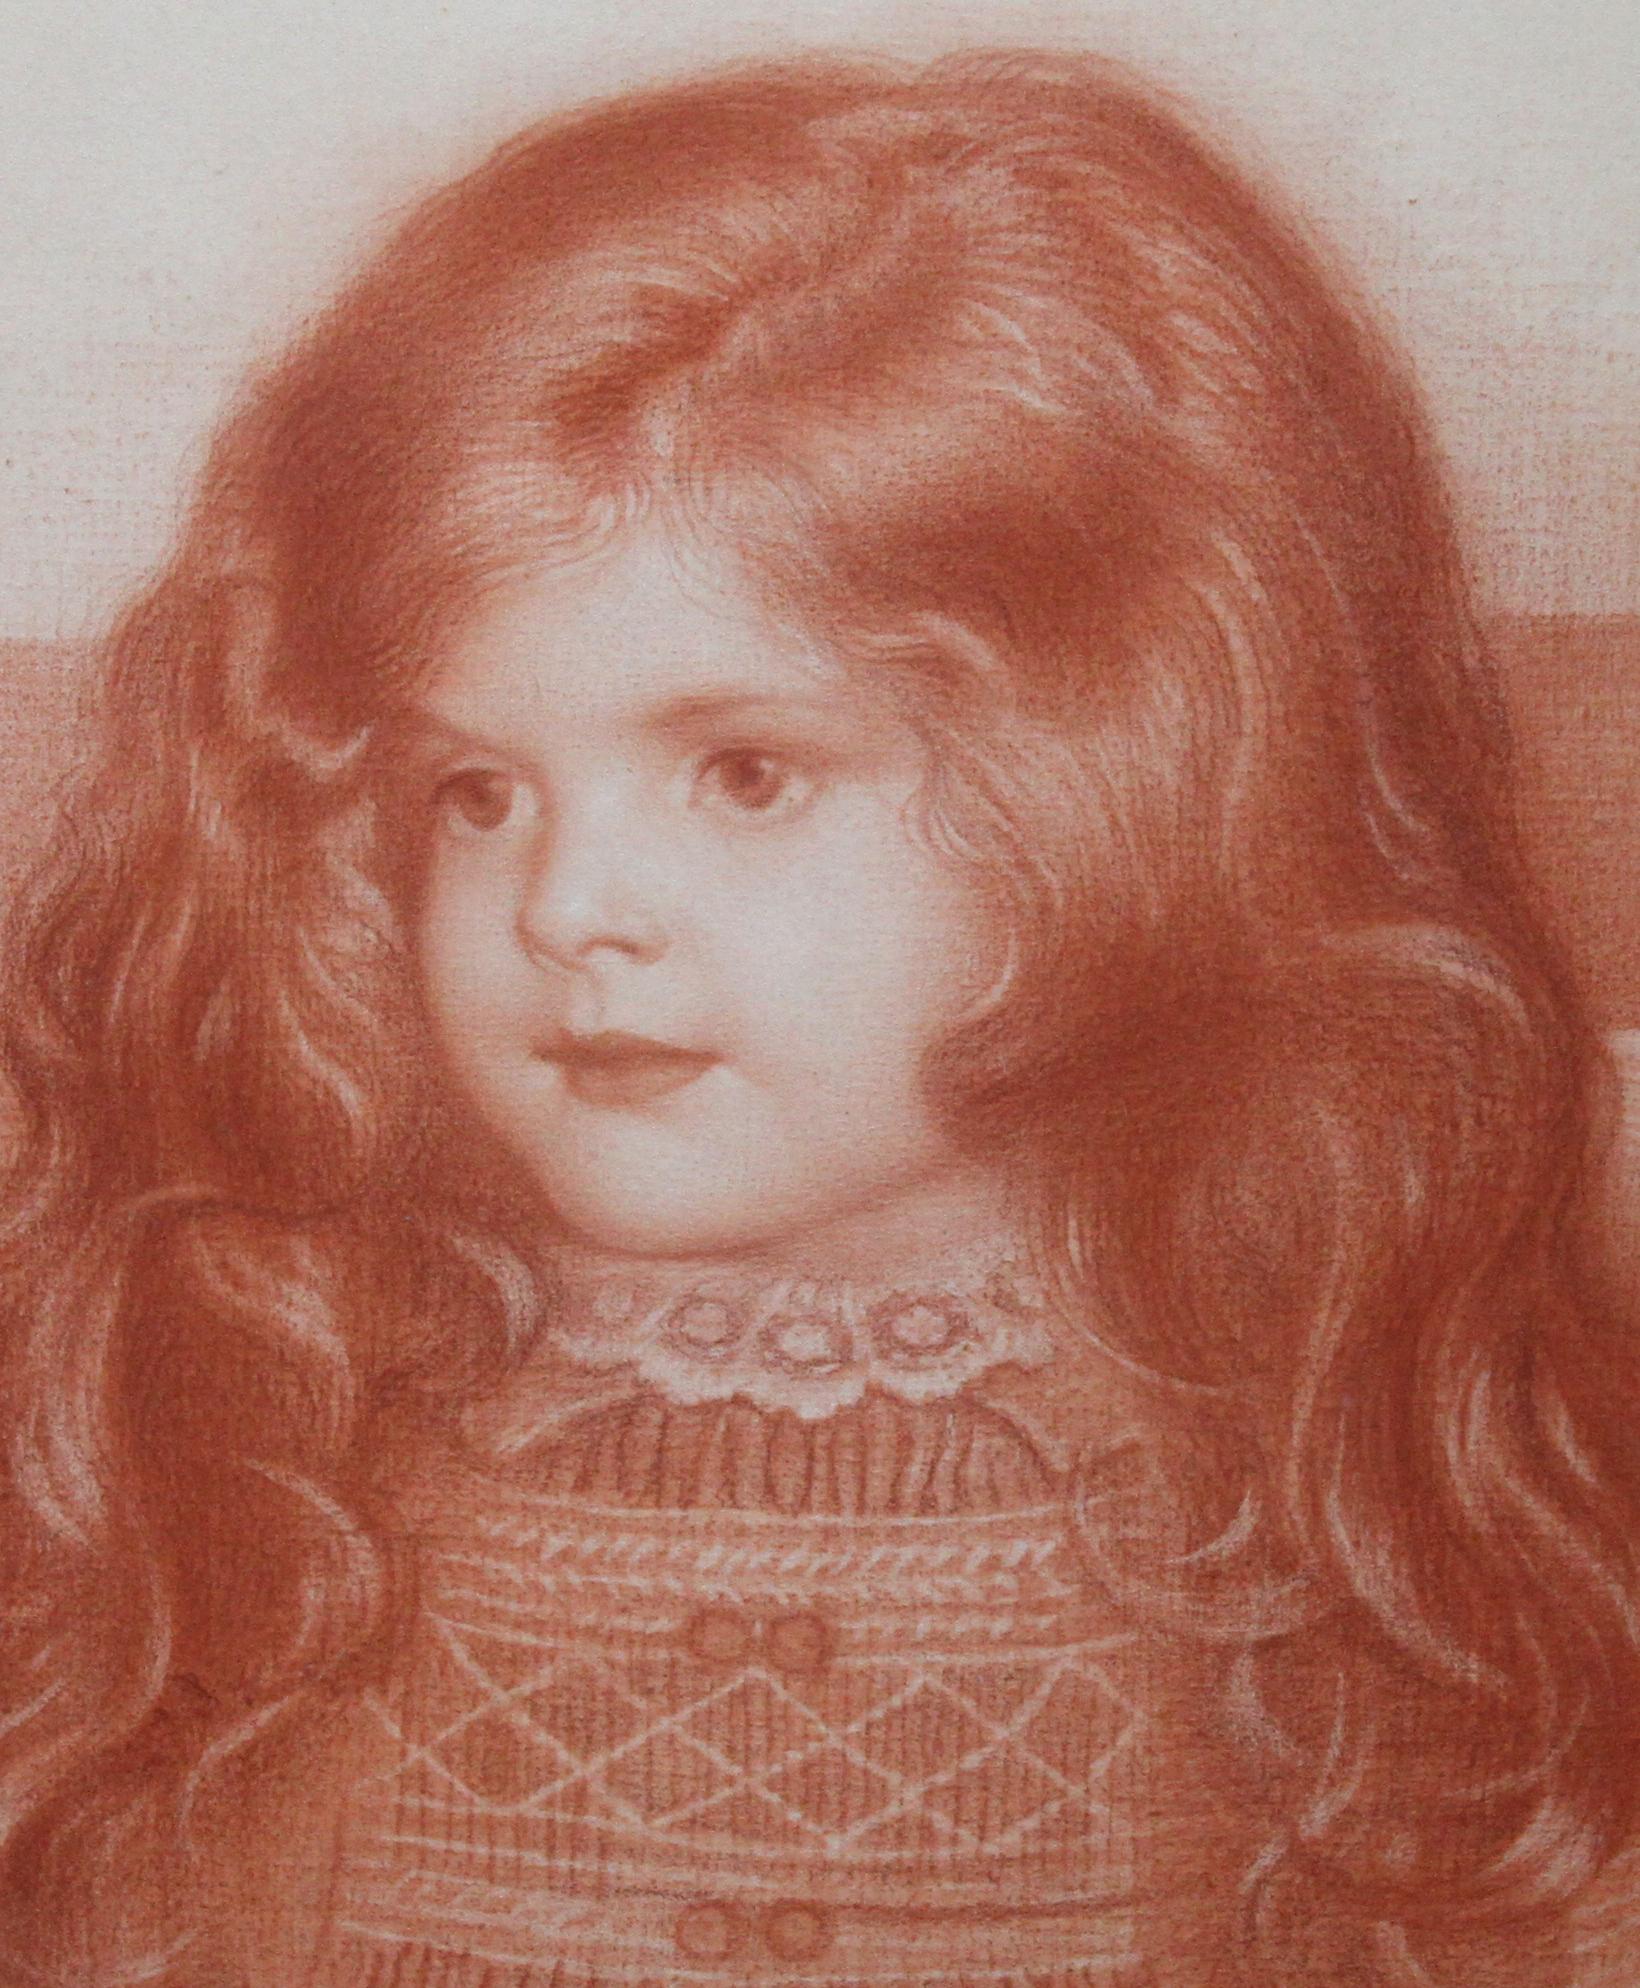 Diese fesselnde viktorianische Porträtzeichnung eines jungen Mädchens stammt von dem britischen präraffaelitischen Künstler Edward Robert Hughes. Das auf 1885 datierte Rötelporträt zeigt Mildred, ihr Name ist oben links eingraviert. Sie sitzt, die